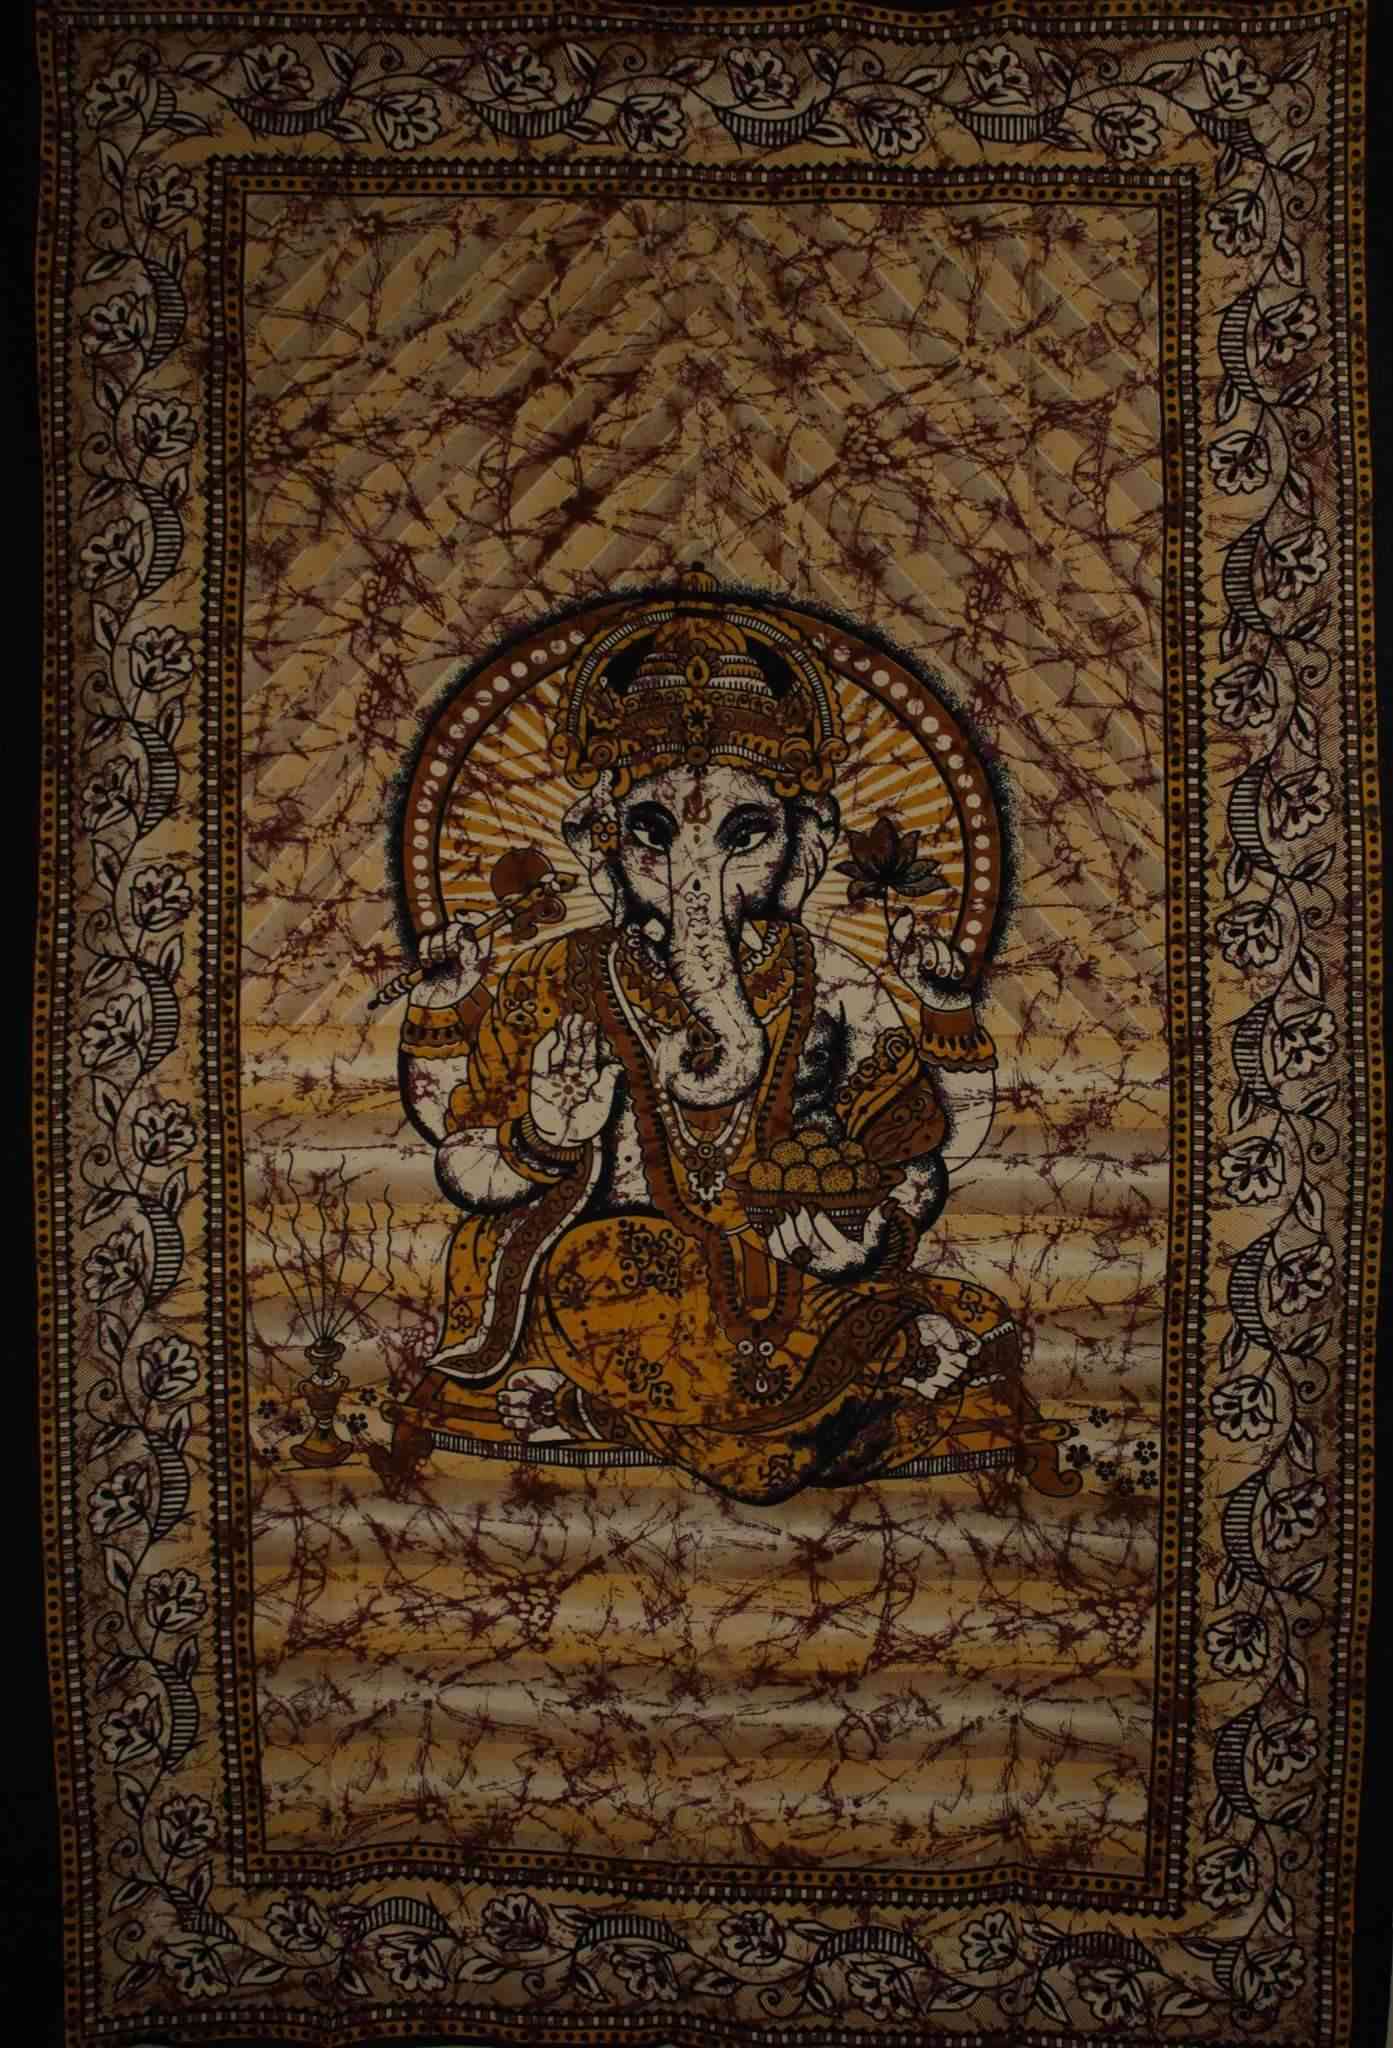 Ganesha Holding Lotus Flower In Batik Style Tie Dye Tapestry